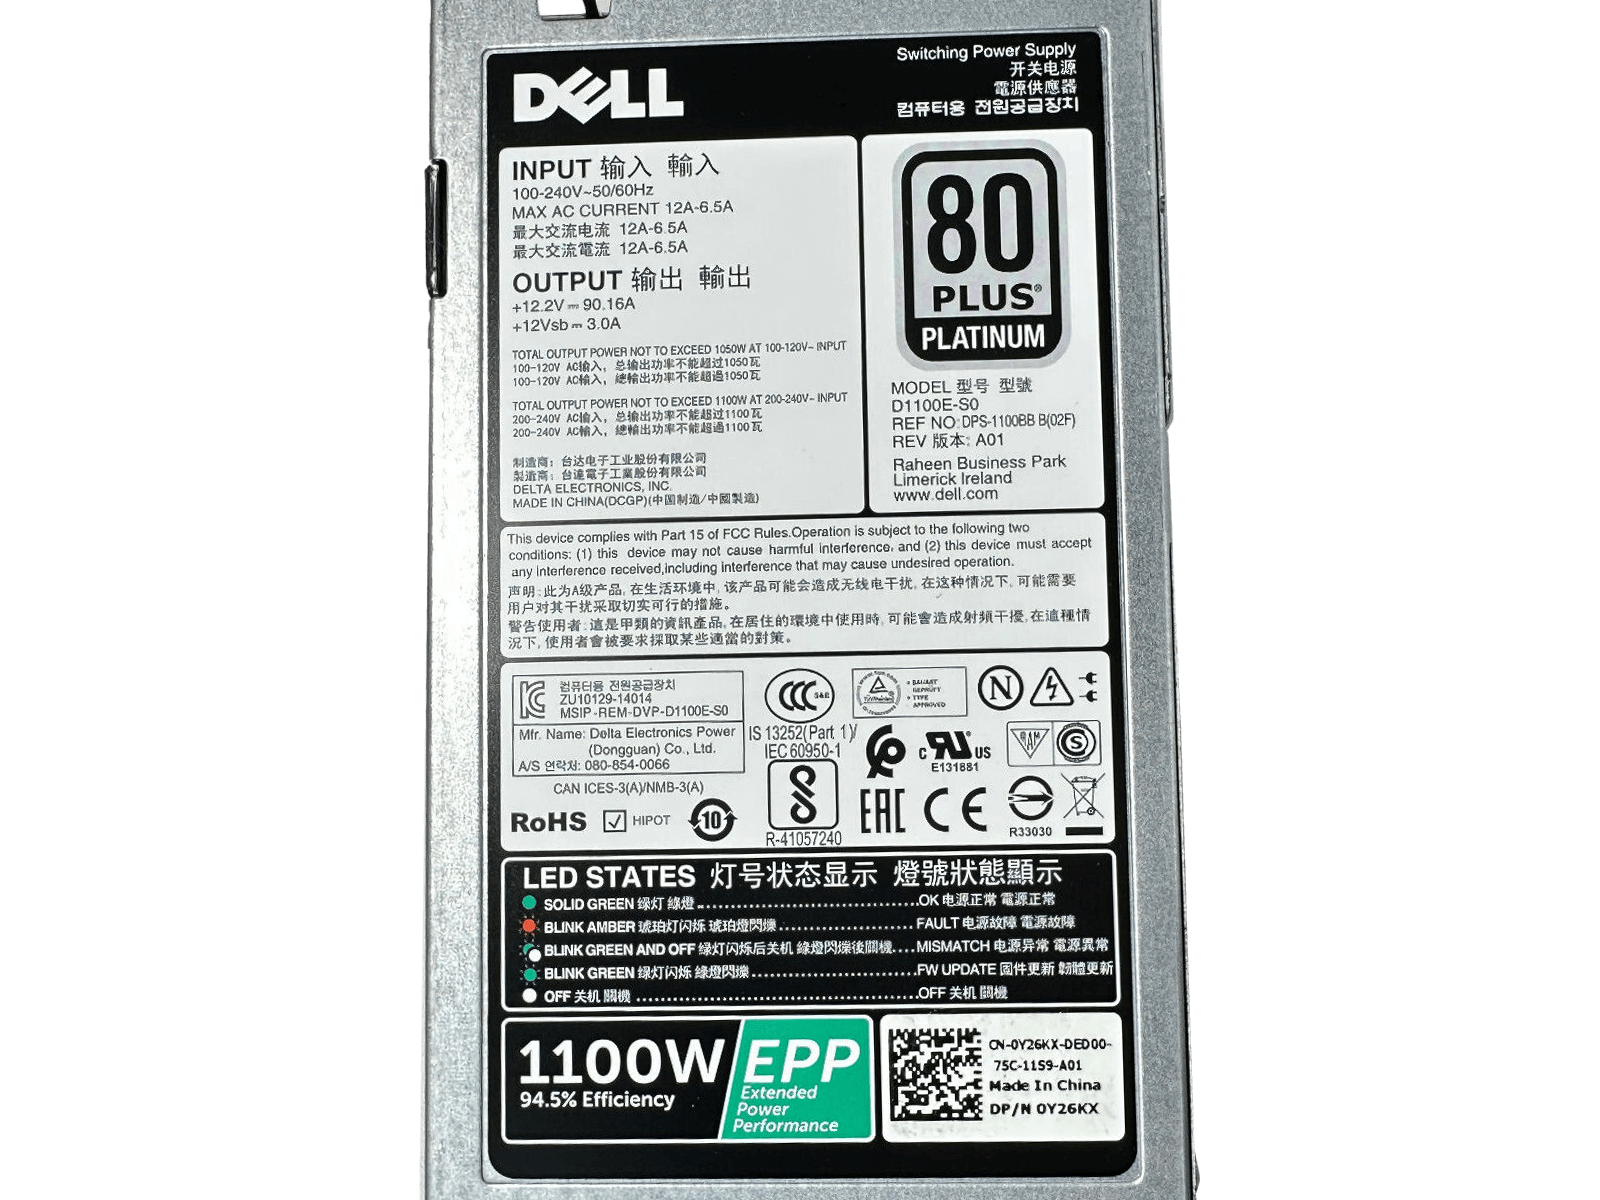 Dell R730xd 2x E5-2697V3 256GB 2x 480GB 4x 1.92TB SSD 12x 1.2TB HDD H730P 1100W.